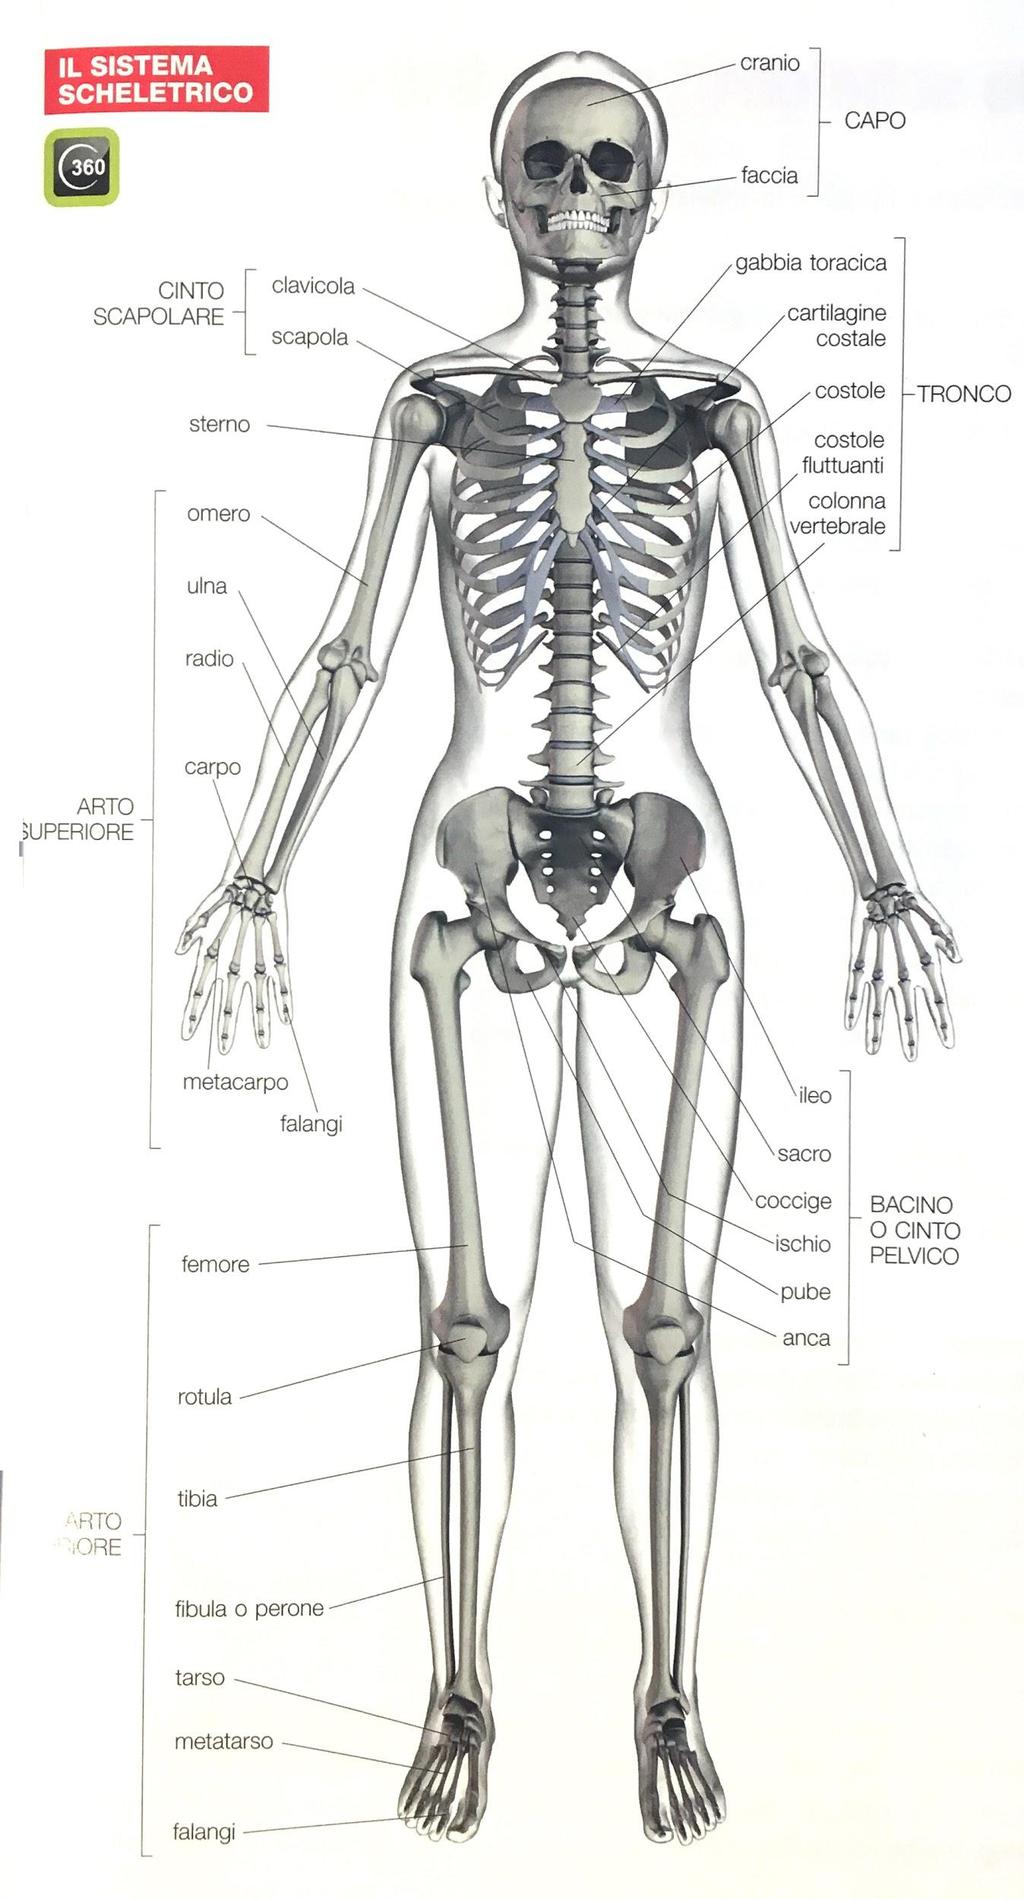 Sistema scheletrico Le parti lo scheletro CAPO cranio e faccia forame occipitale TRONCO colonna vertebrale gabbia toracica ARTI